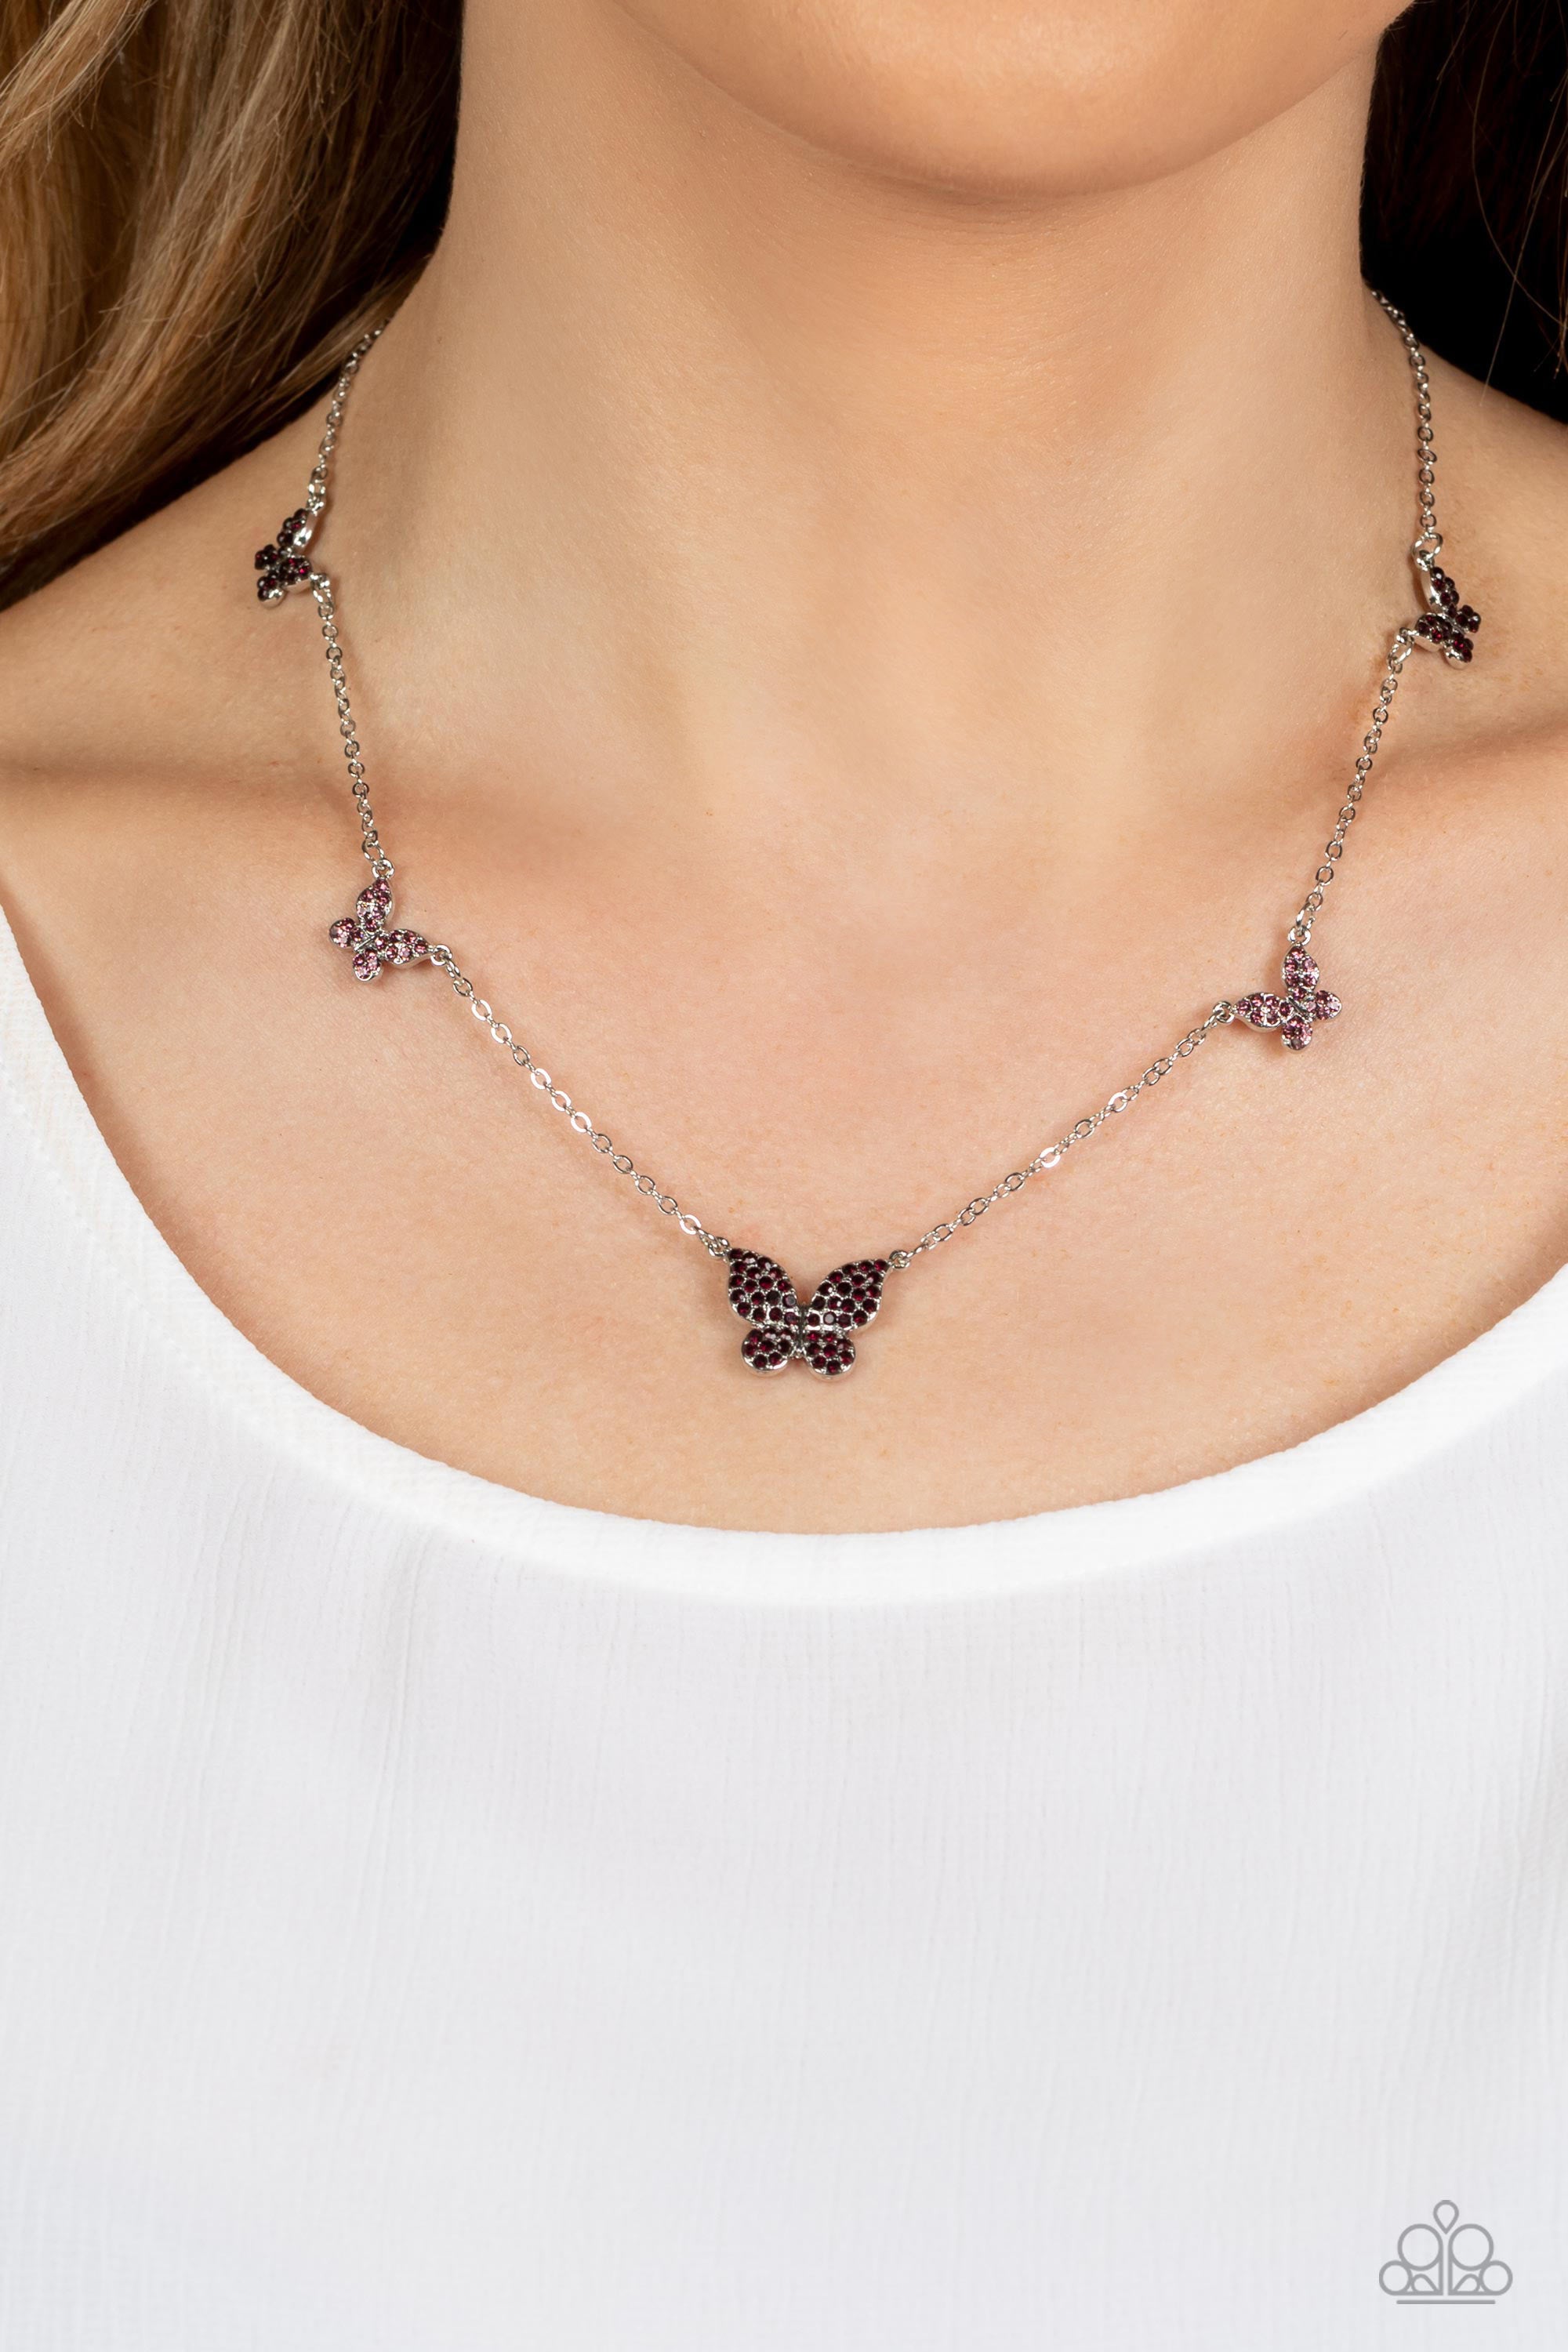 Butterfly Necklace (Solid Silver) - Sydney | Abbott Atelier Jewelry